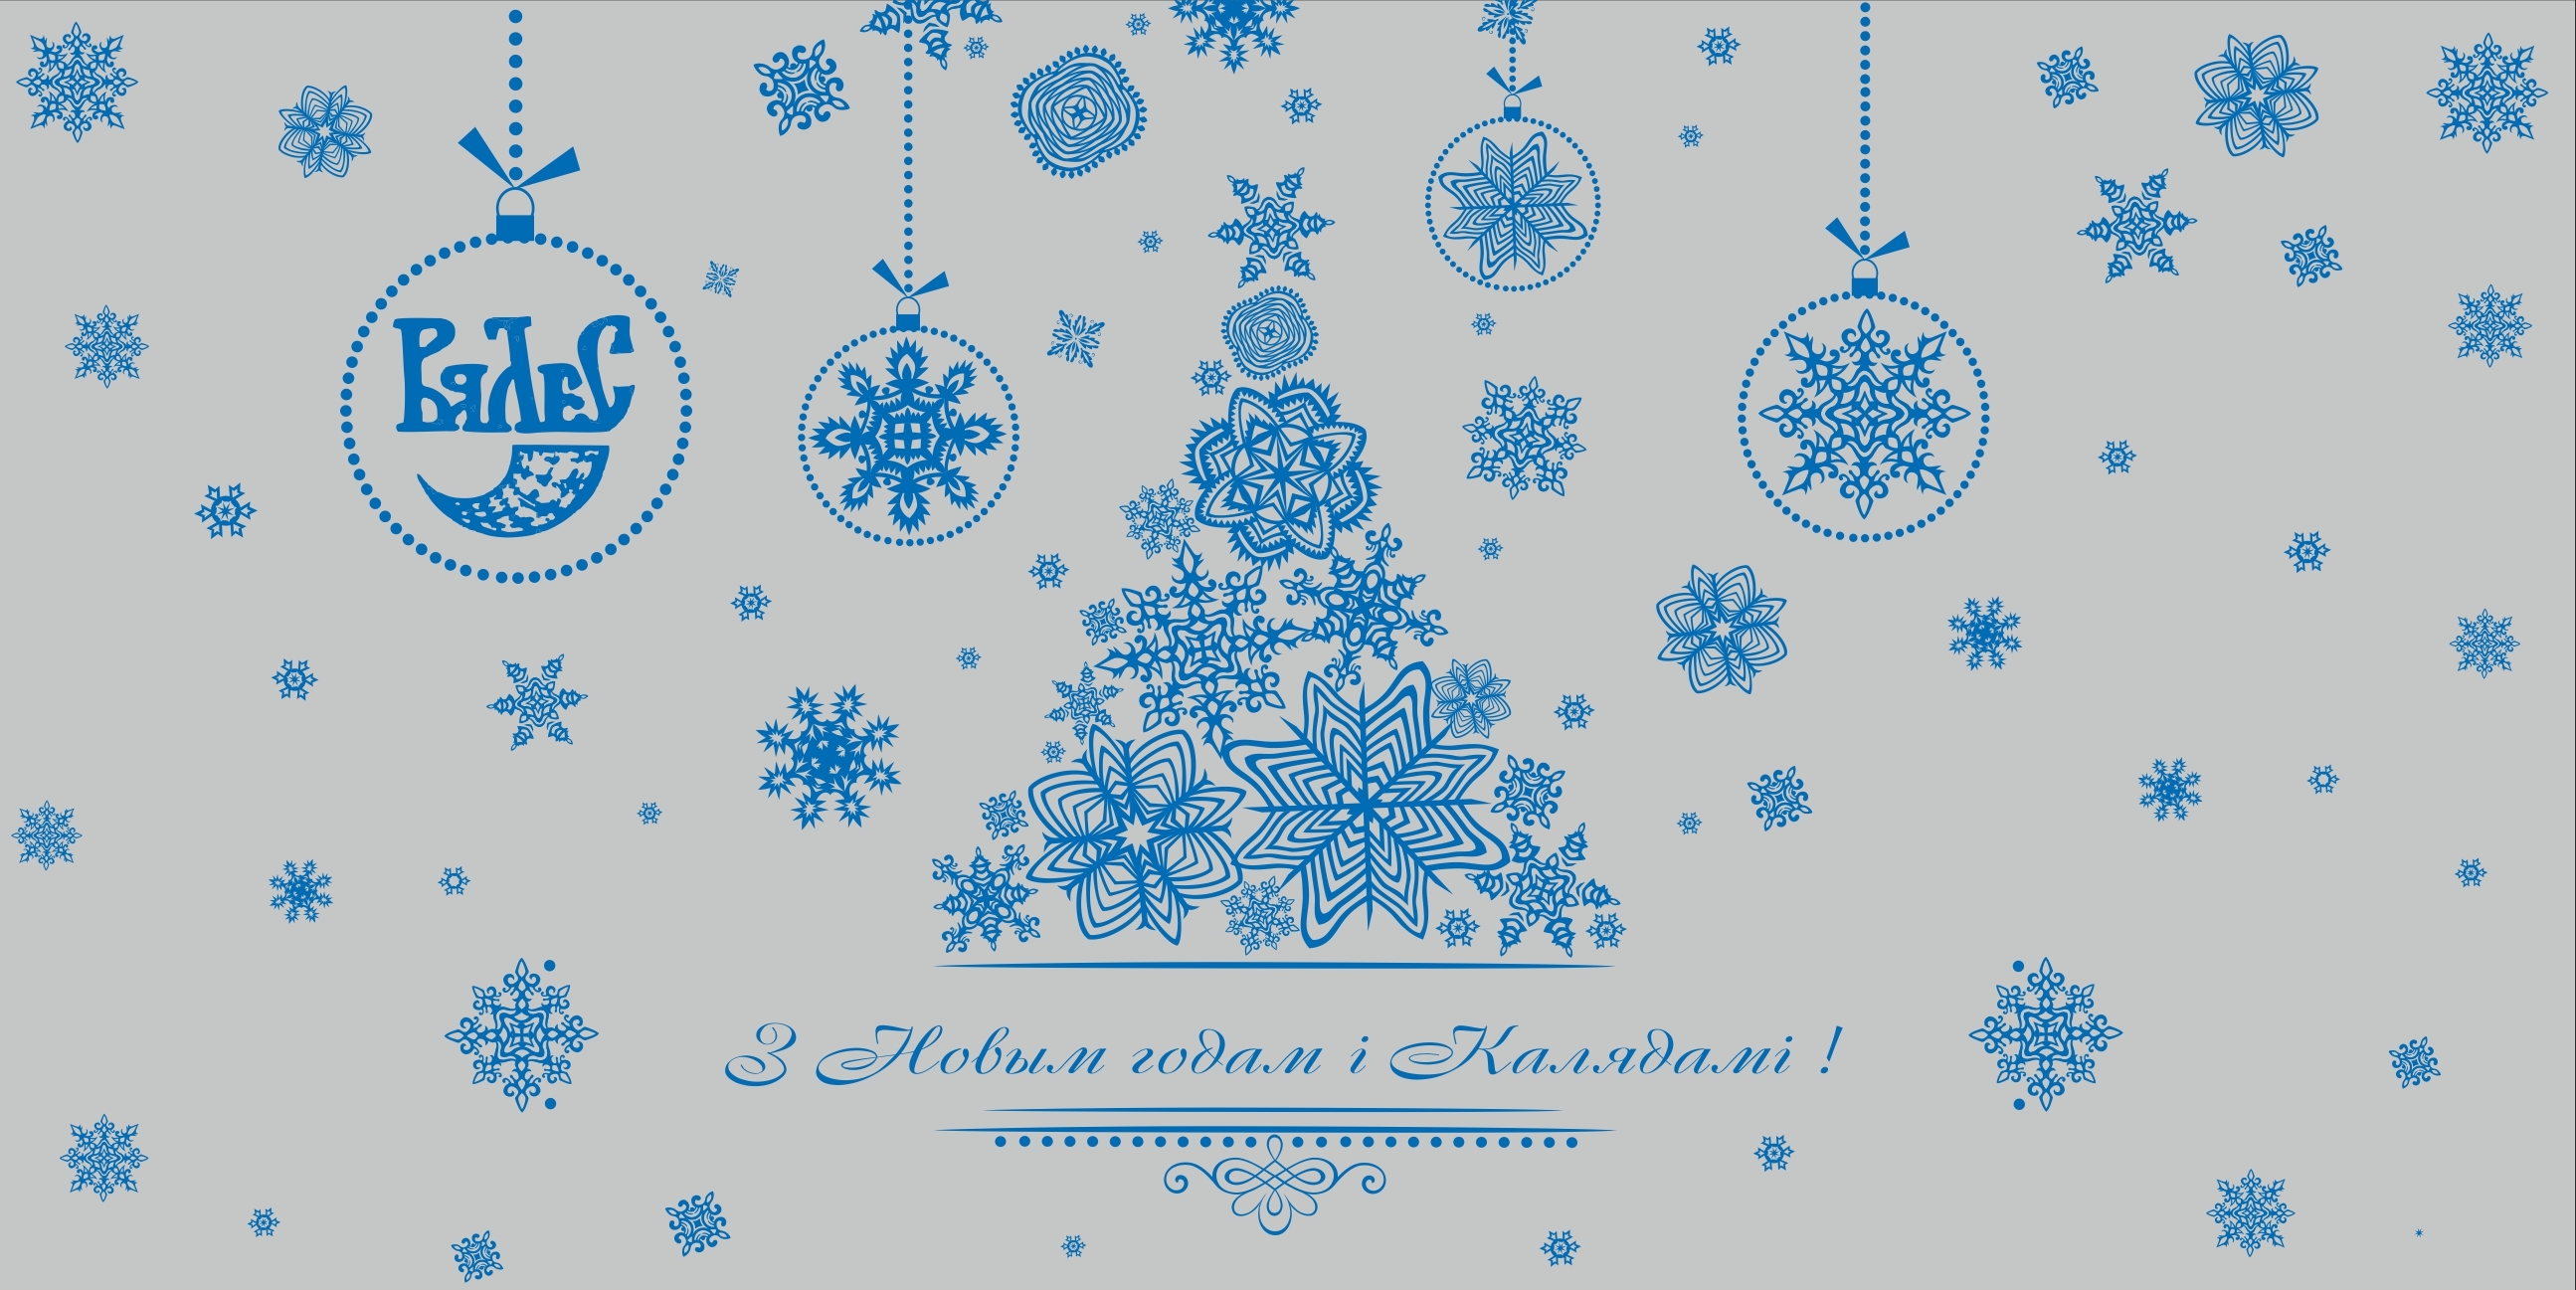 Новогоднее Поздравление На Белорусском Языке